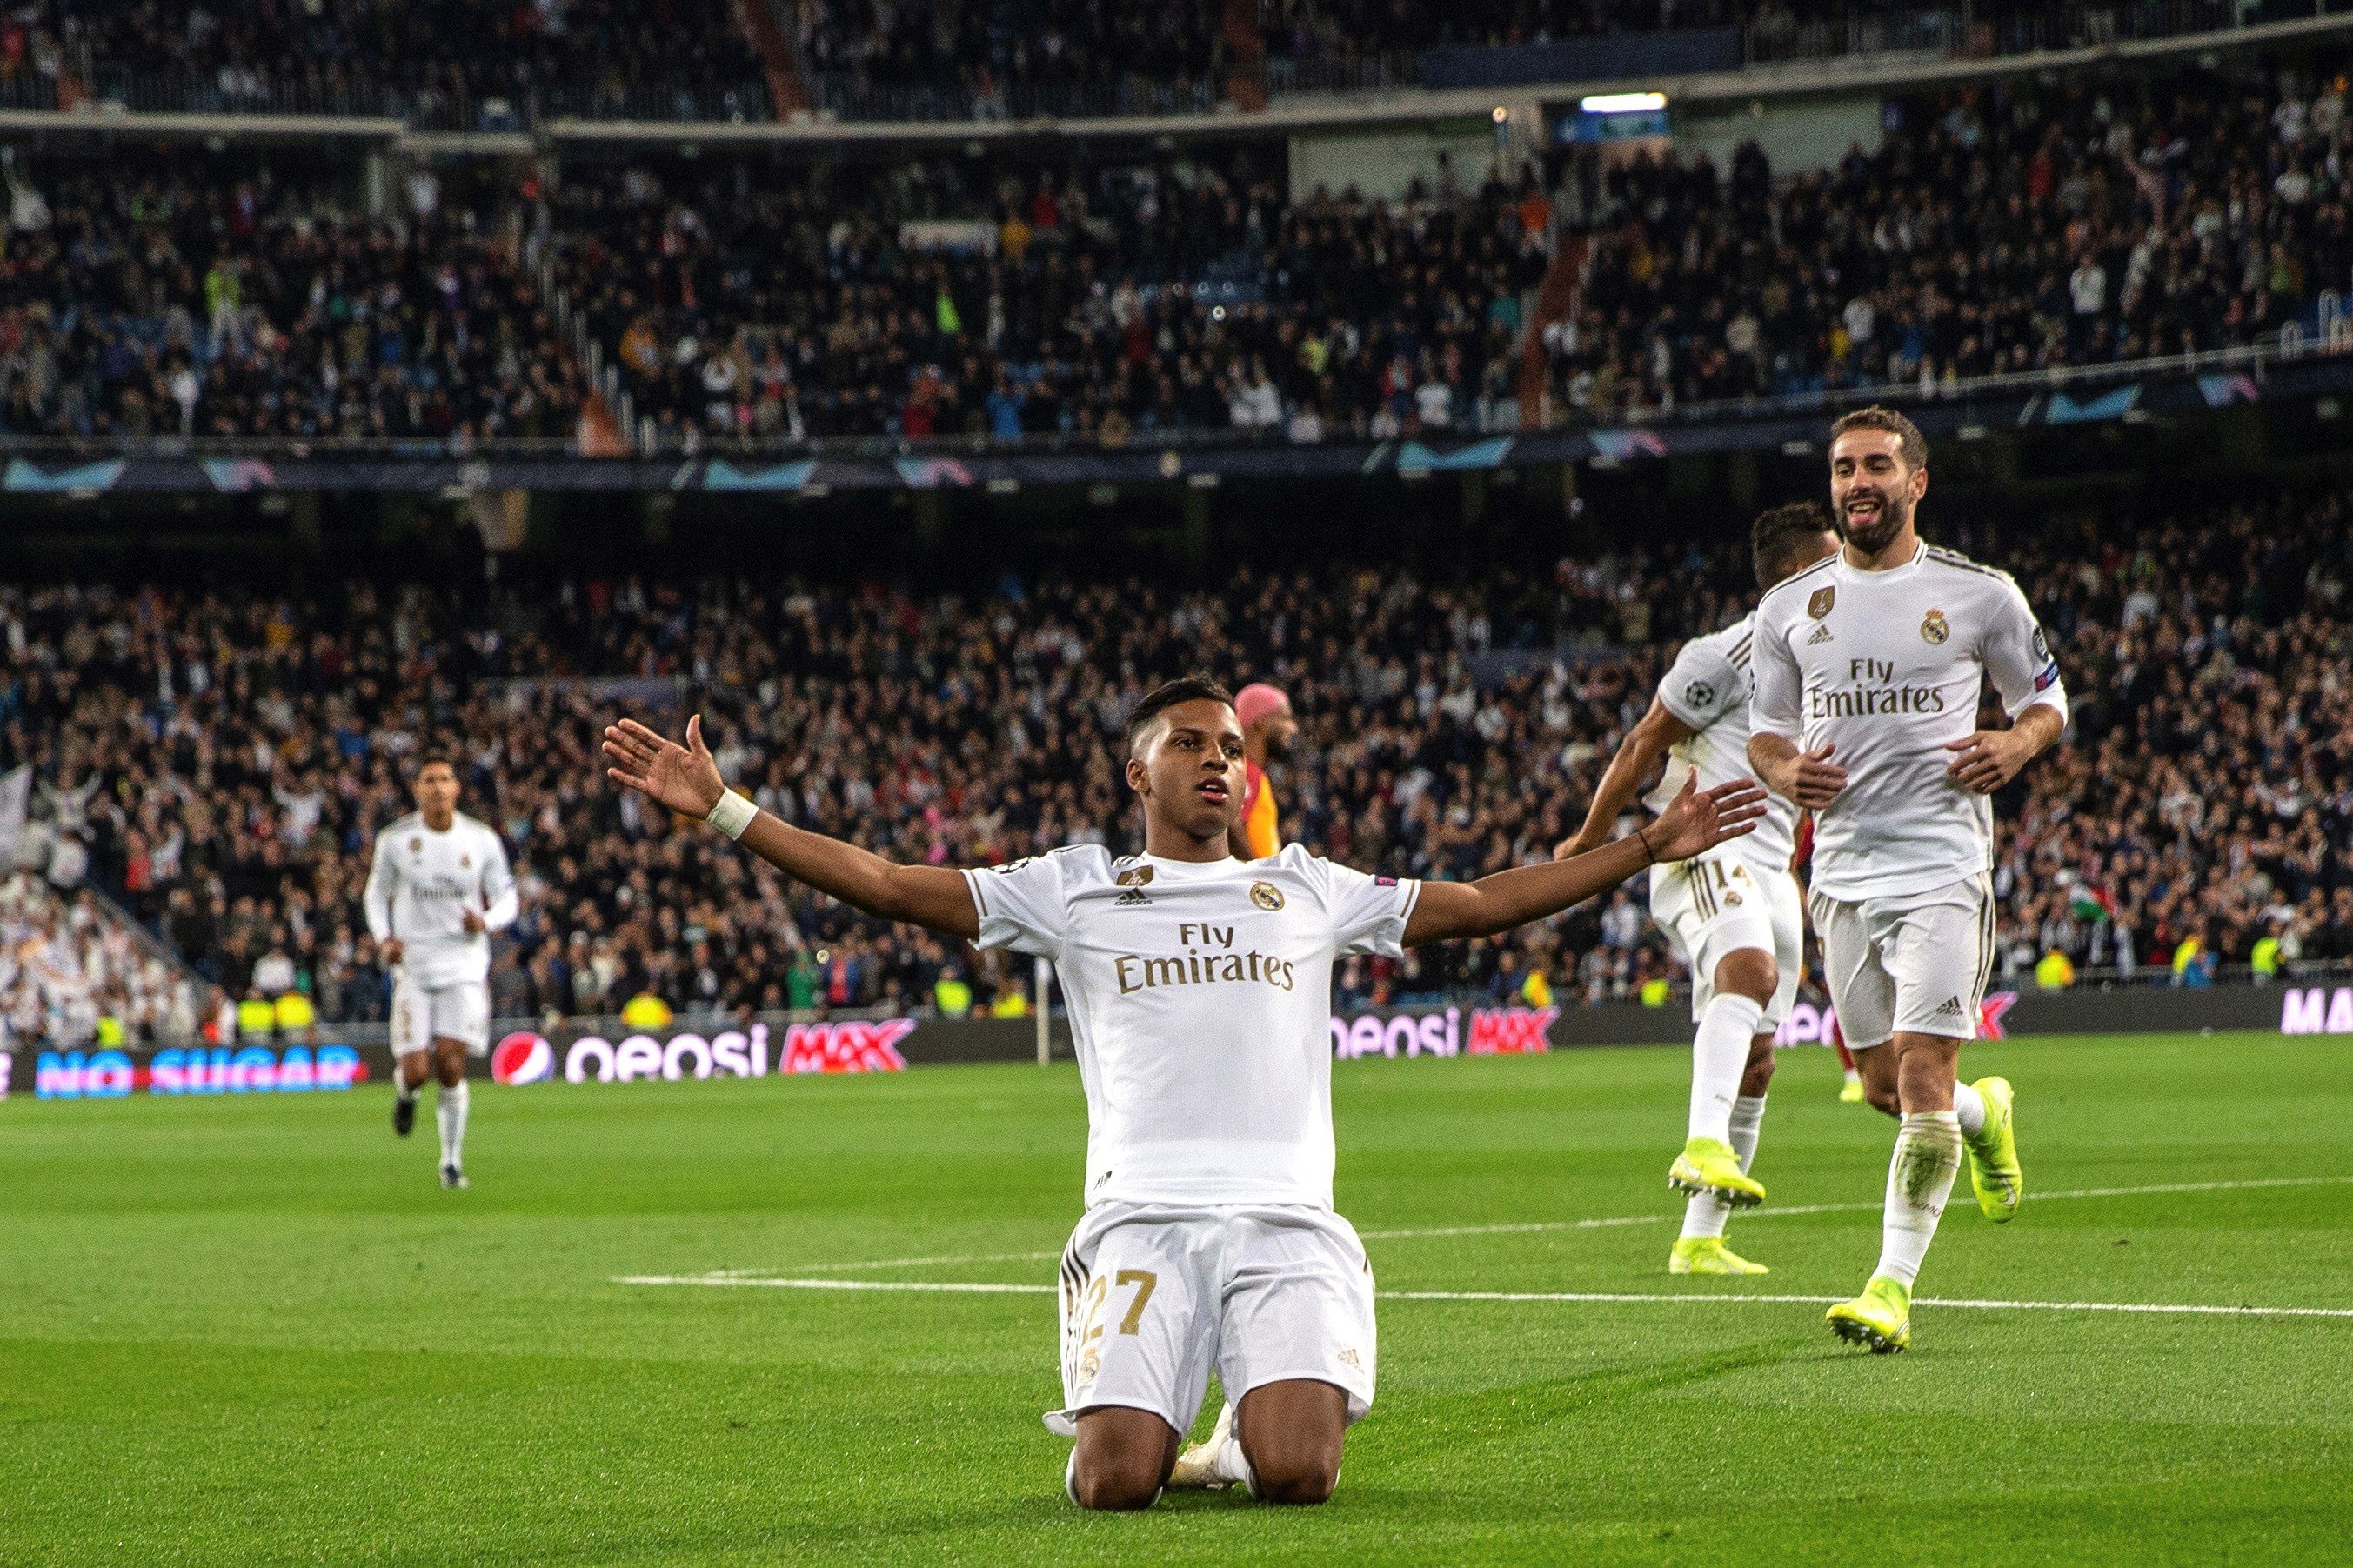 El Madrid goleja i torna a guanyar a la Champions un any després (6-0)